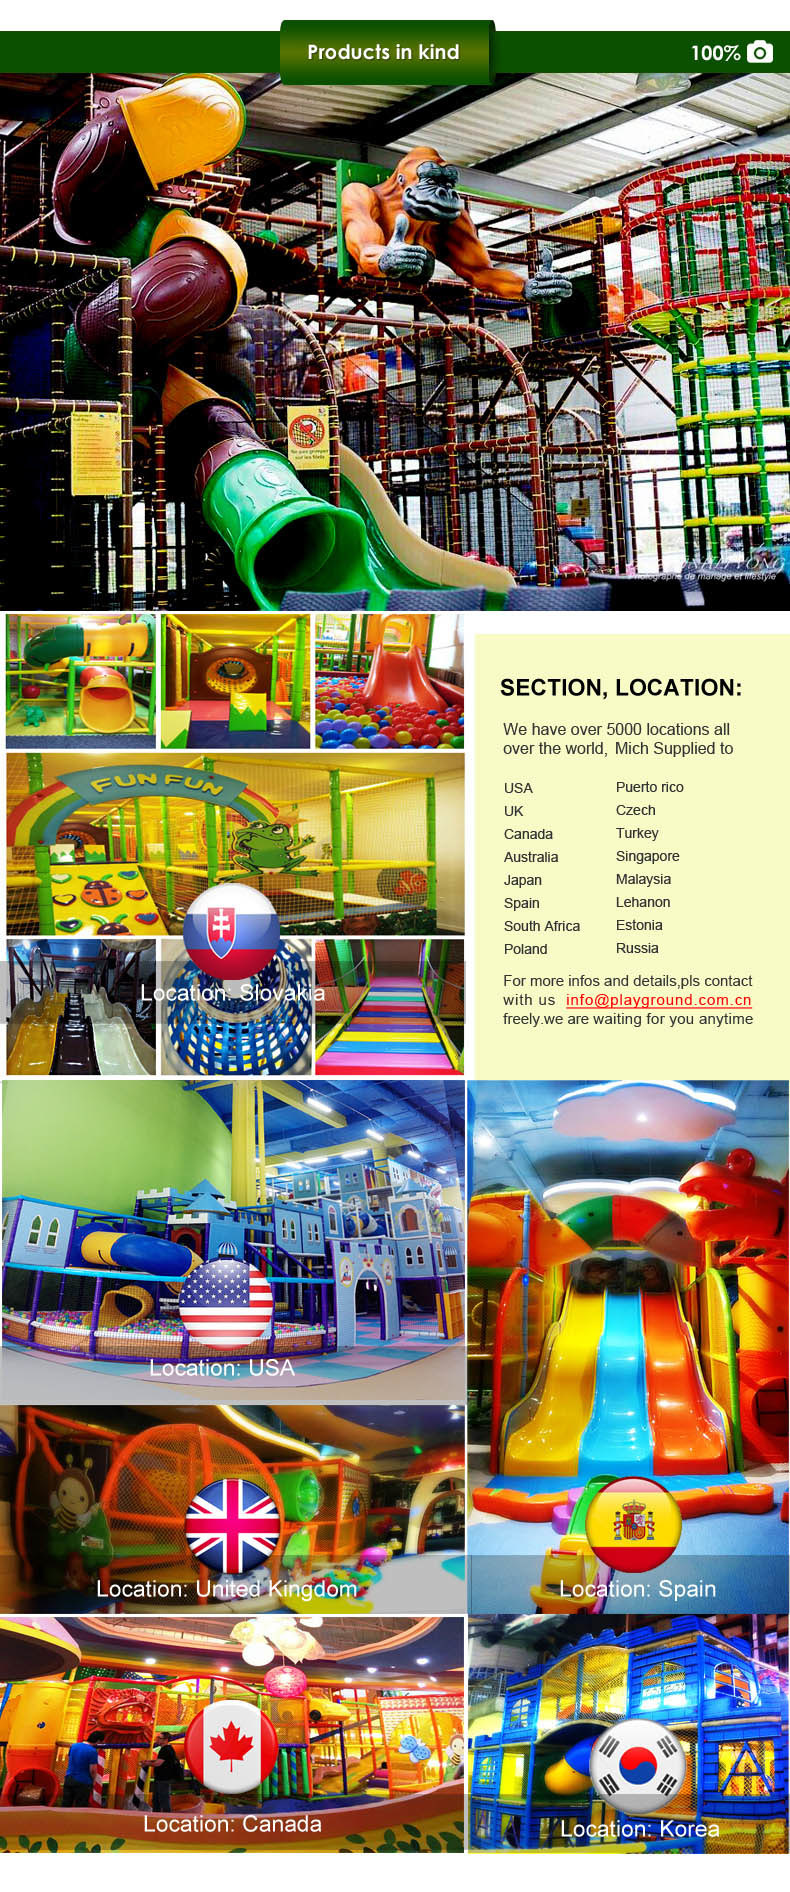 Mich Amusement Park Plastic Toys for Children